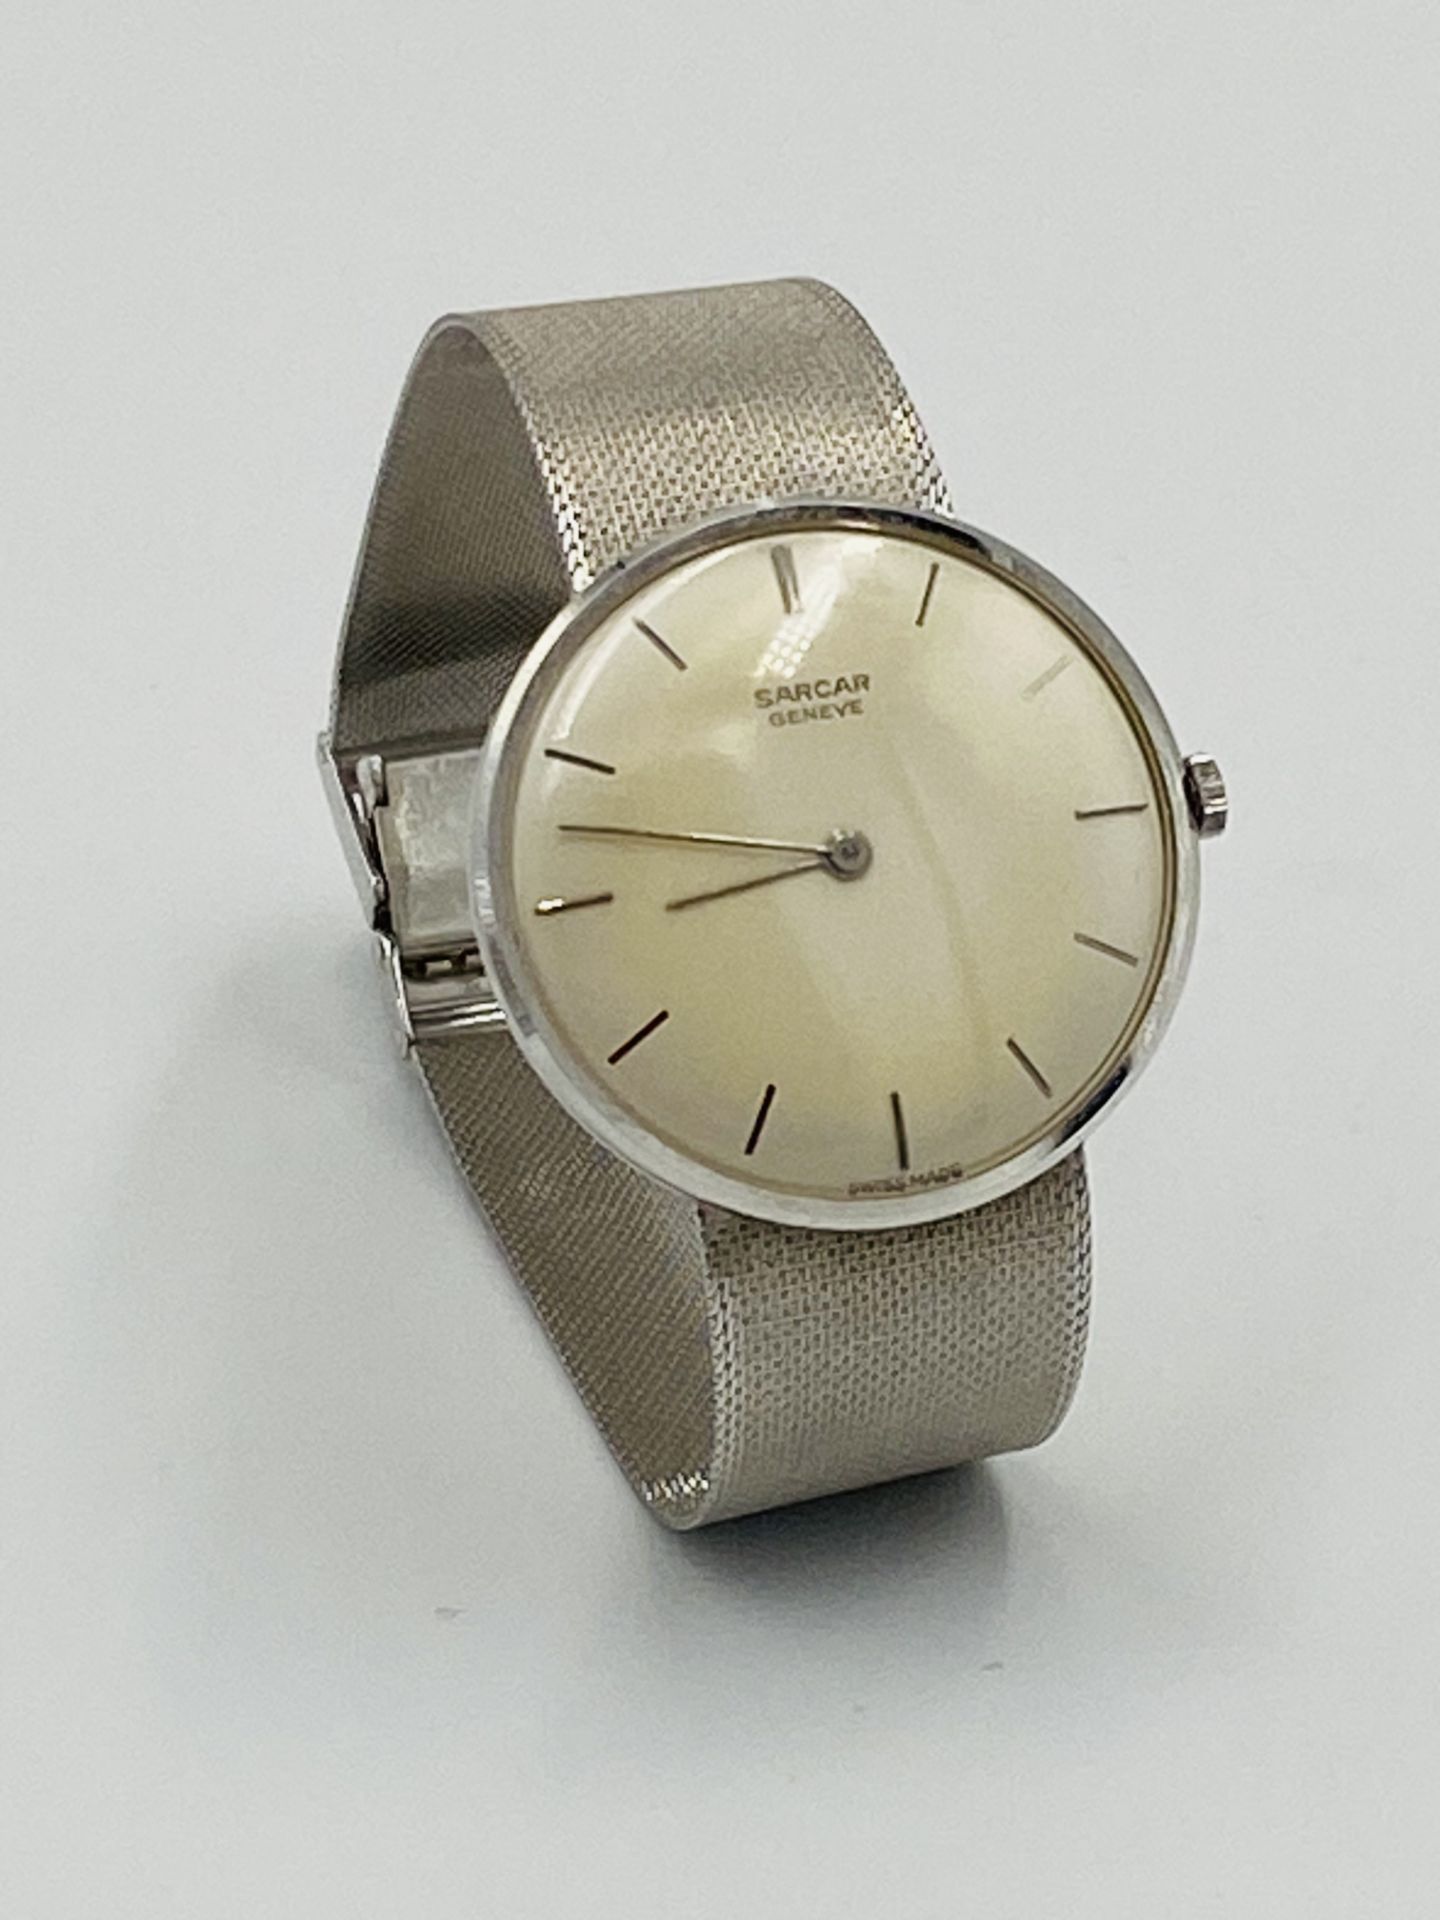 Sarcar Geneve wristwatch with 18ct gold strap - Bild 2 aus 7